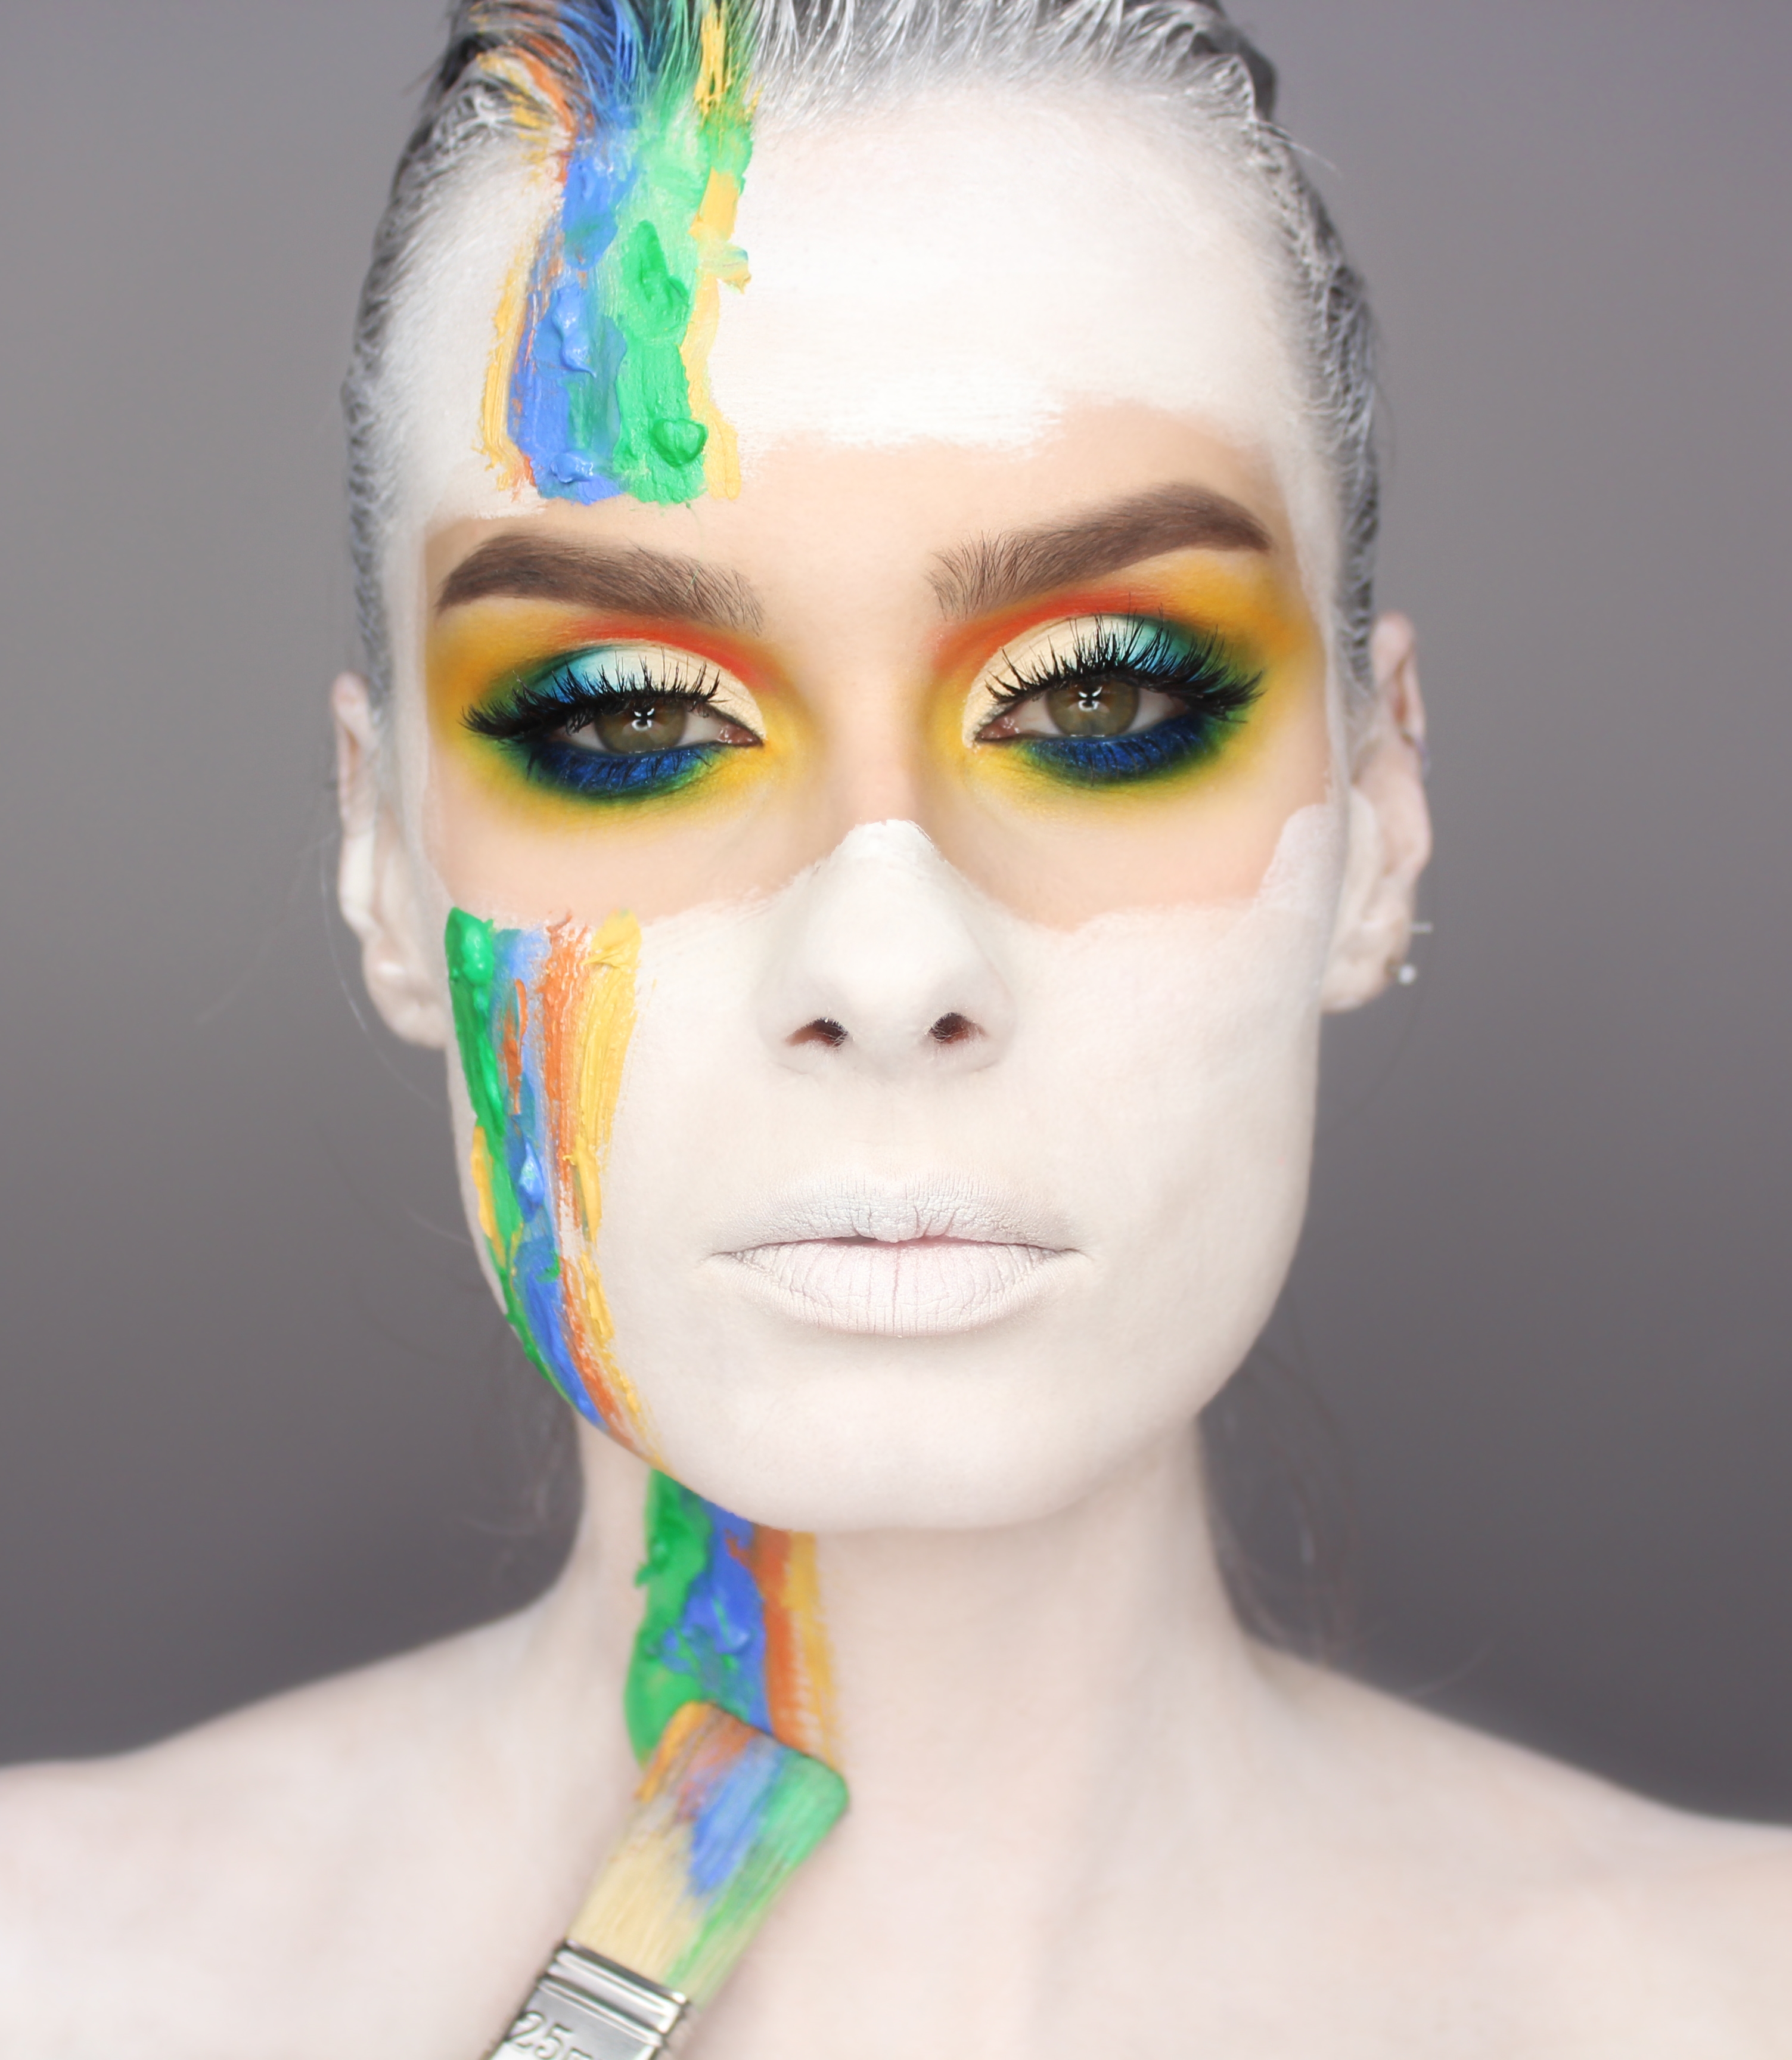 Zmalowana - makijaż inspirowany, artystyczny, kolorowy makijaż facepainting